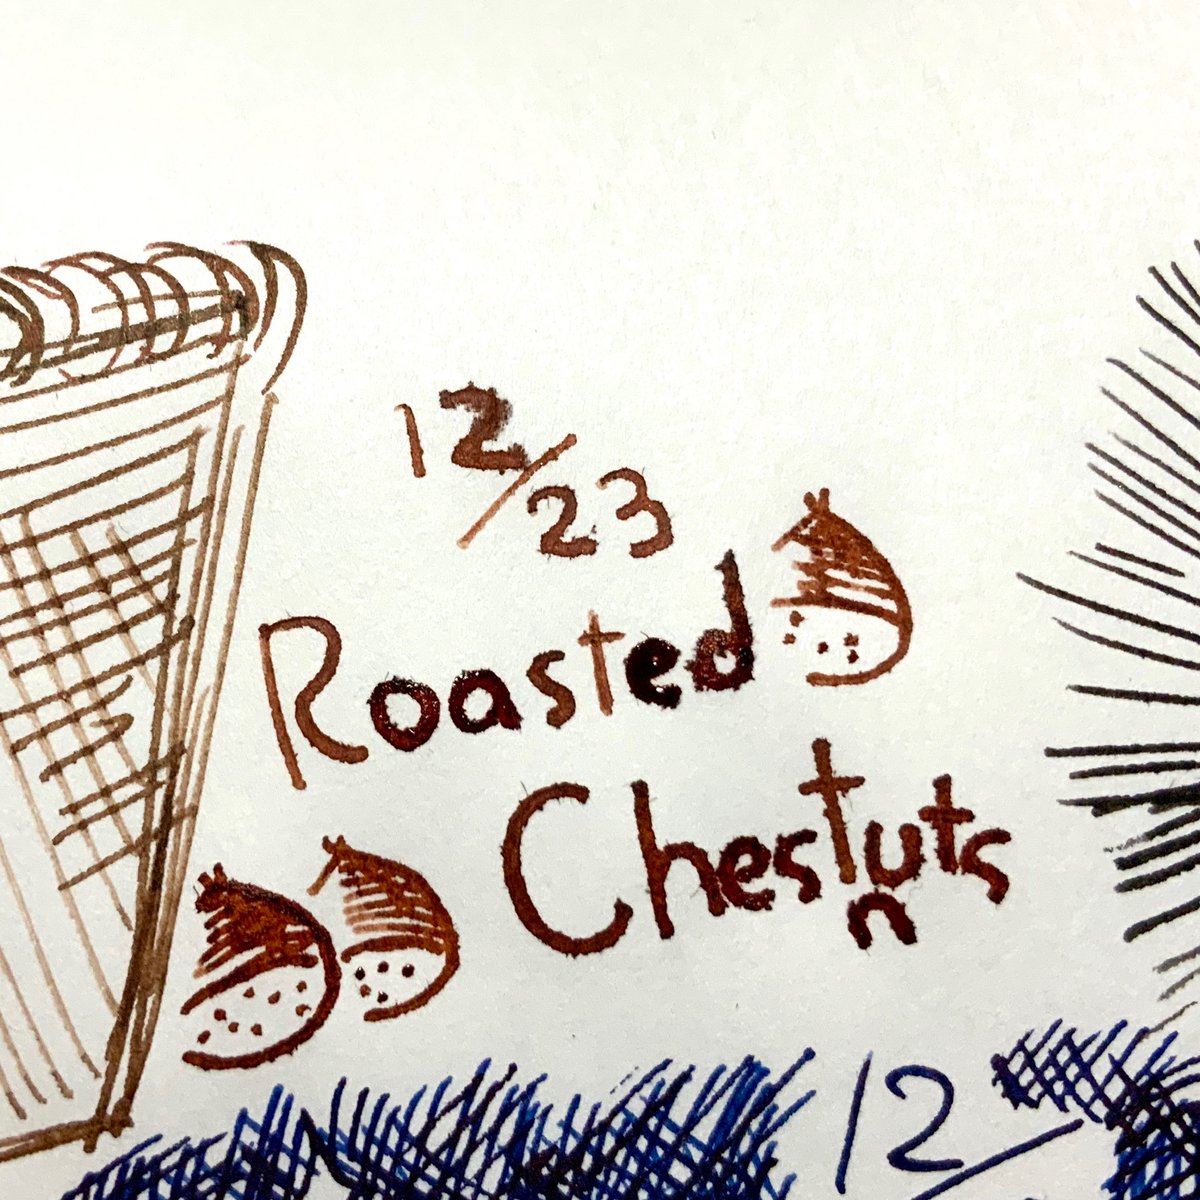 12/23  Roasted Chestnuts?
#はとインクカレンダー
名前の通り栗!焼き栗〜!
ジンジャーブレッドよりは濃くて赤寄りの栗色でした。Nをね、書き忘れてね…nも仲間に…いれてあげてね… 